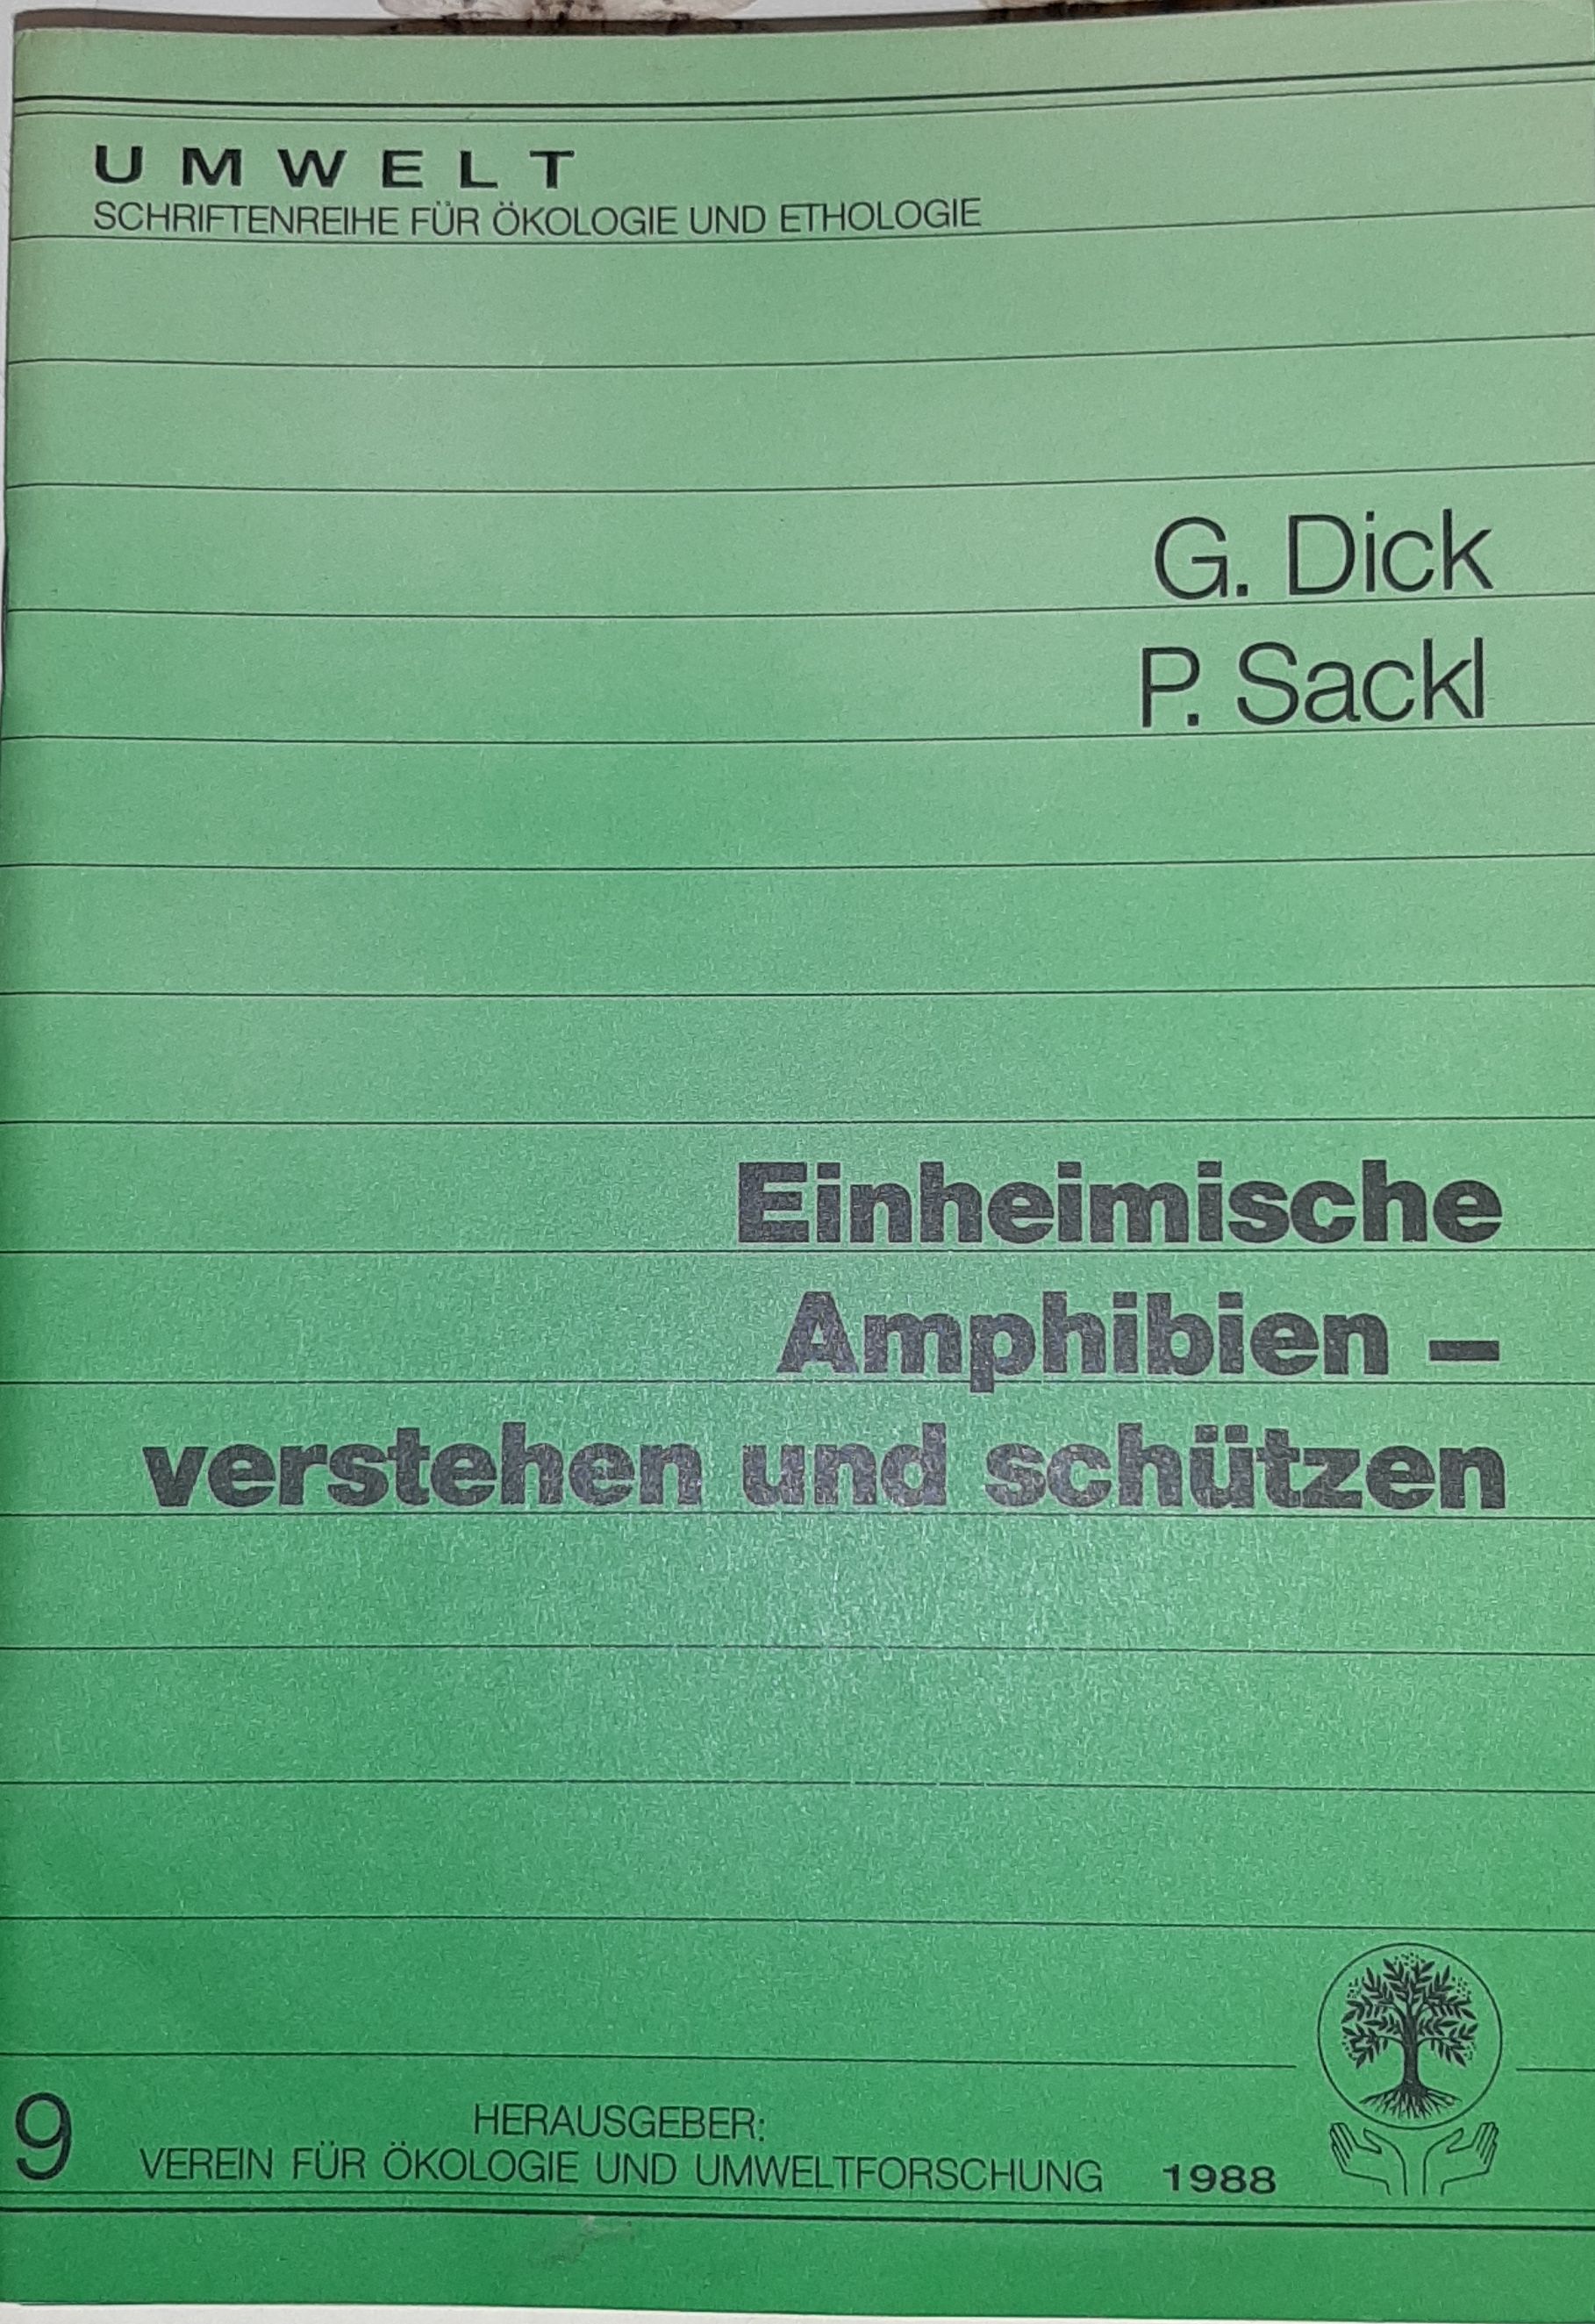 Gerald Dick, Peter Sackl: Einheimische Amphibien - verstehen und schützen. (Rippl-Rónai Múzeum RR-F)